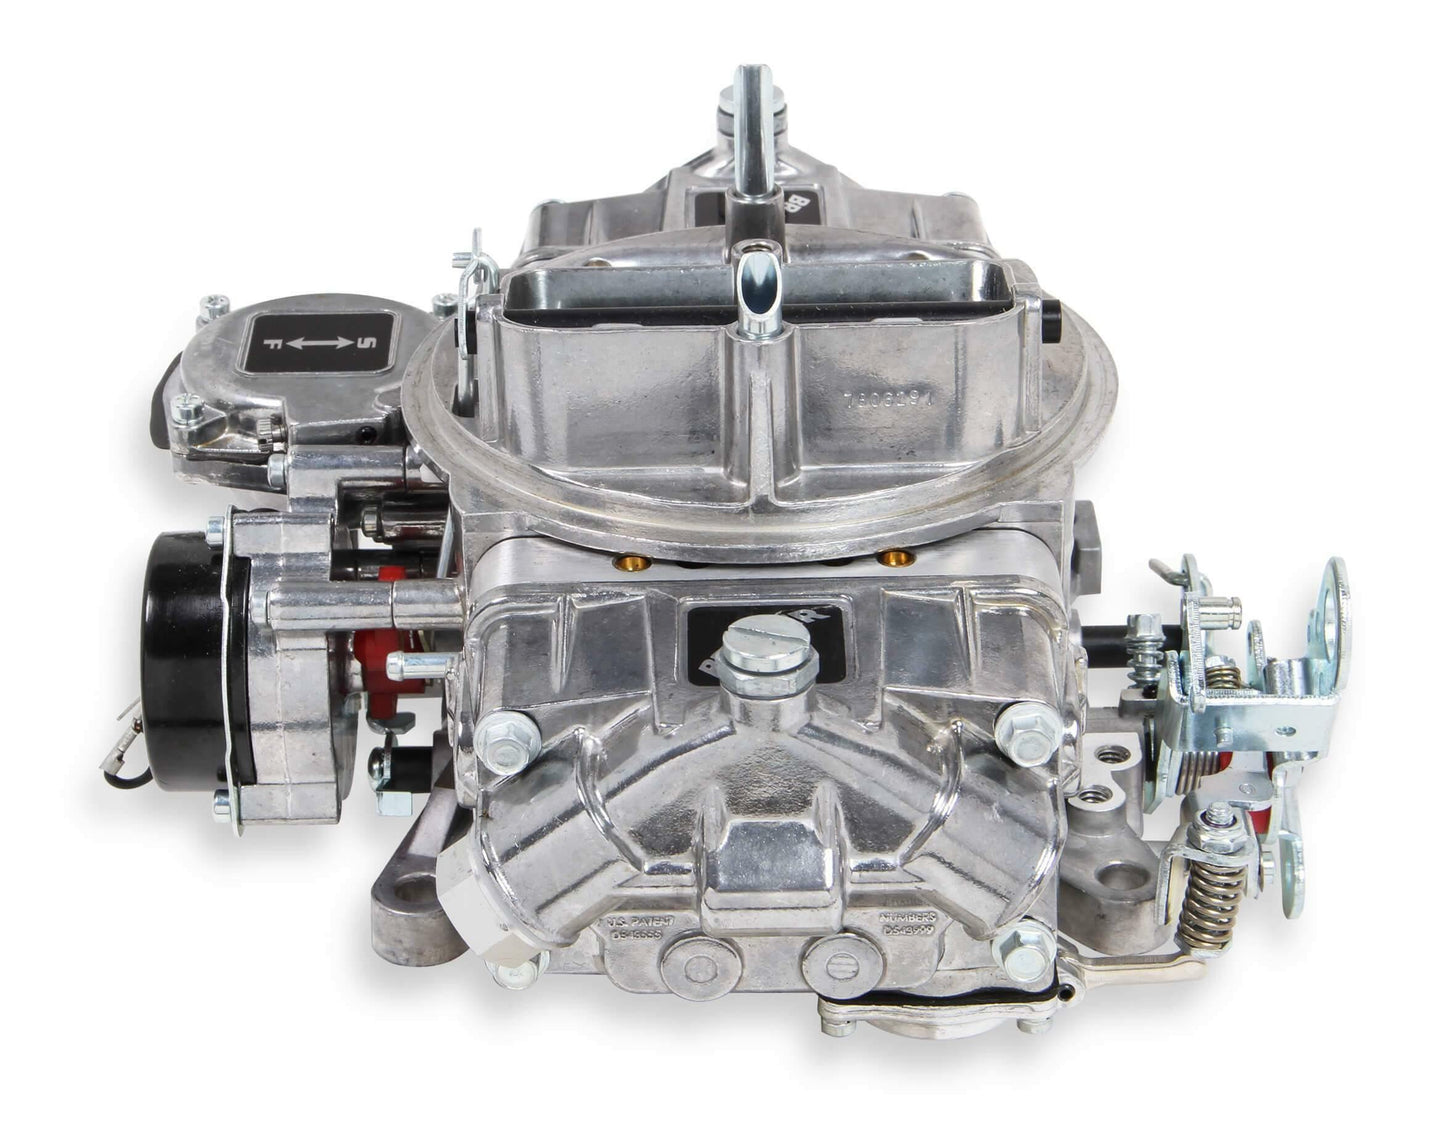 Quick Fuel BR-67256 Brawler Carburetor 670 CFM Vacuum Secondary Carb 4150